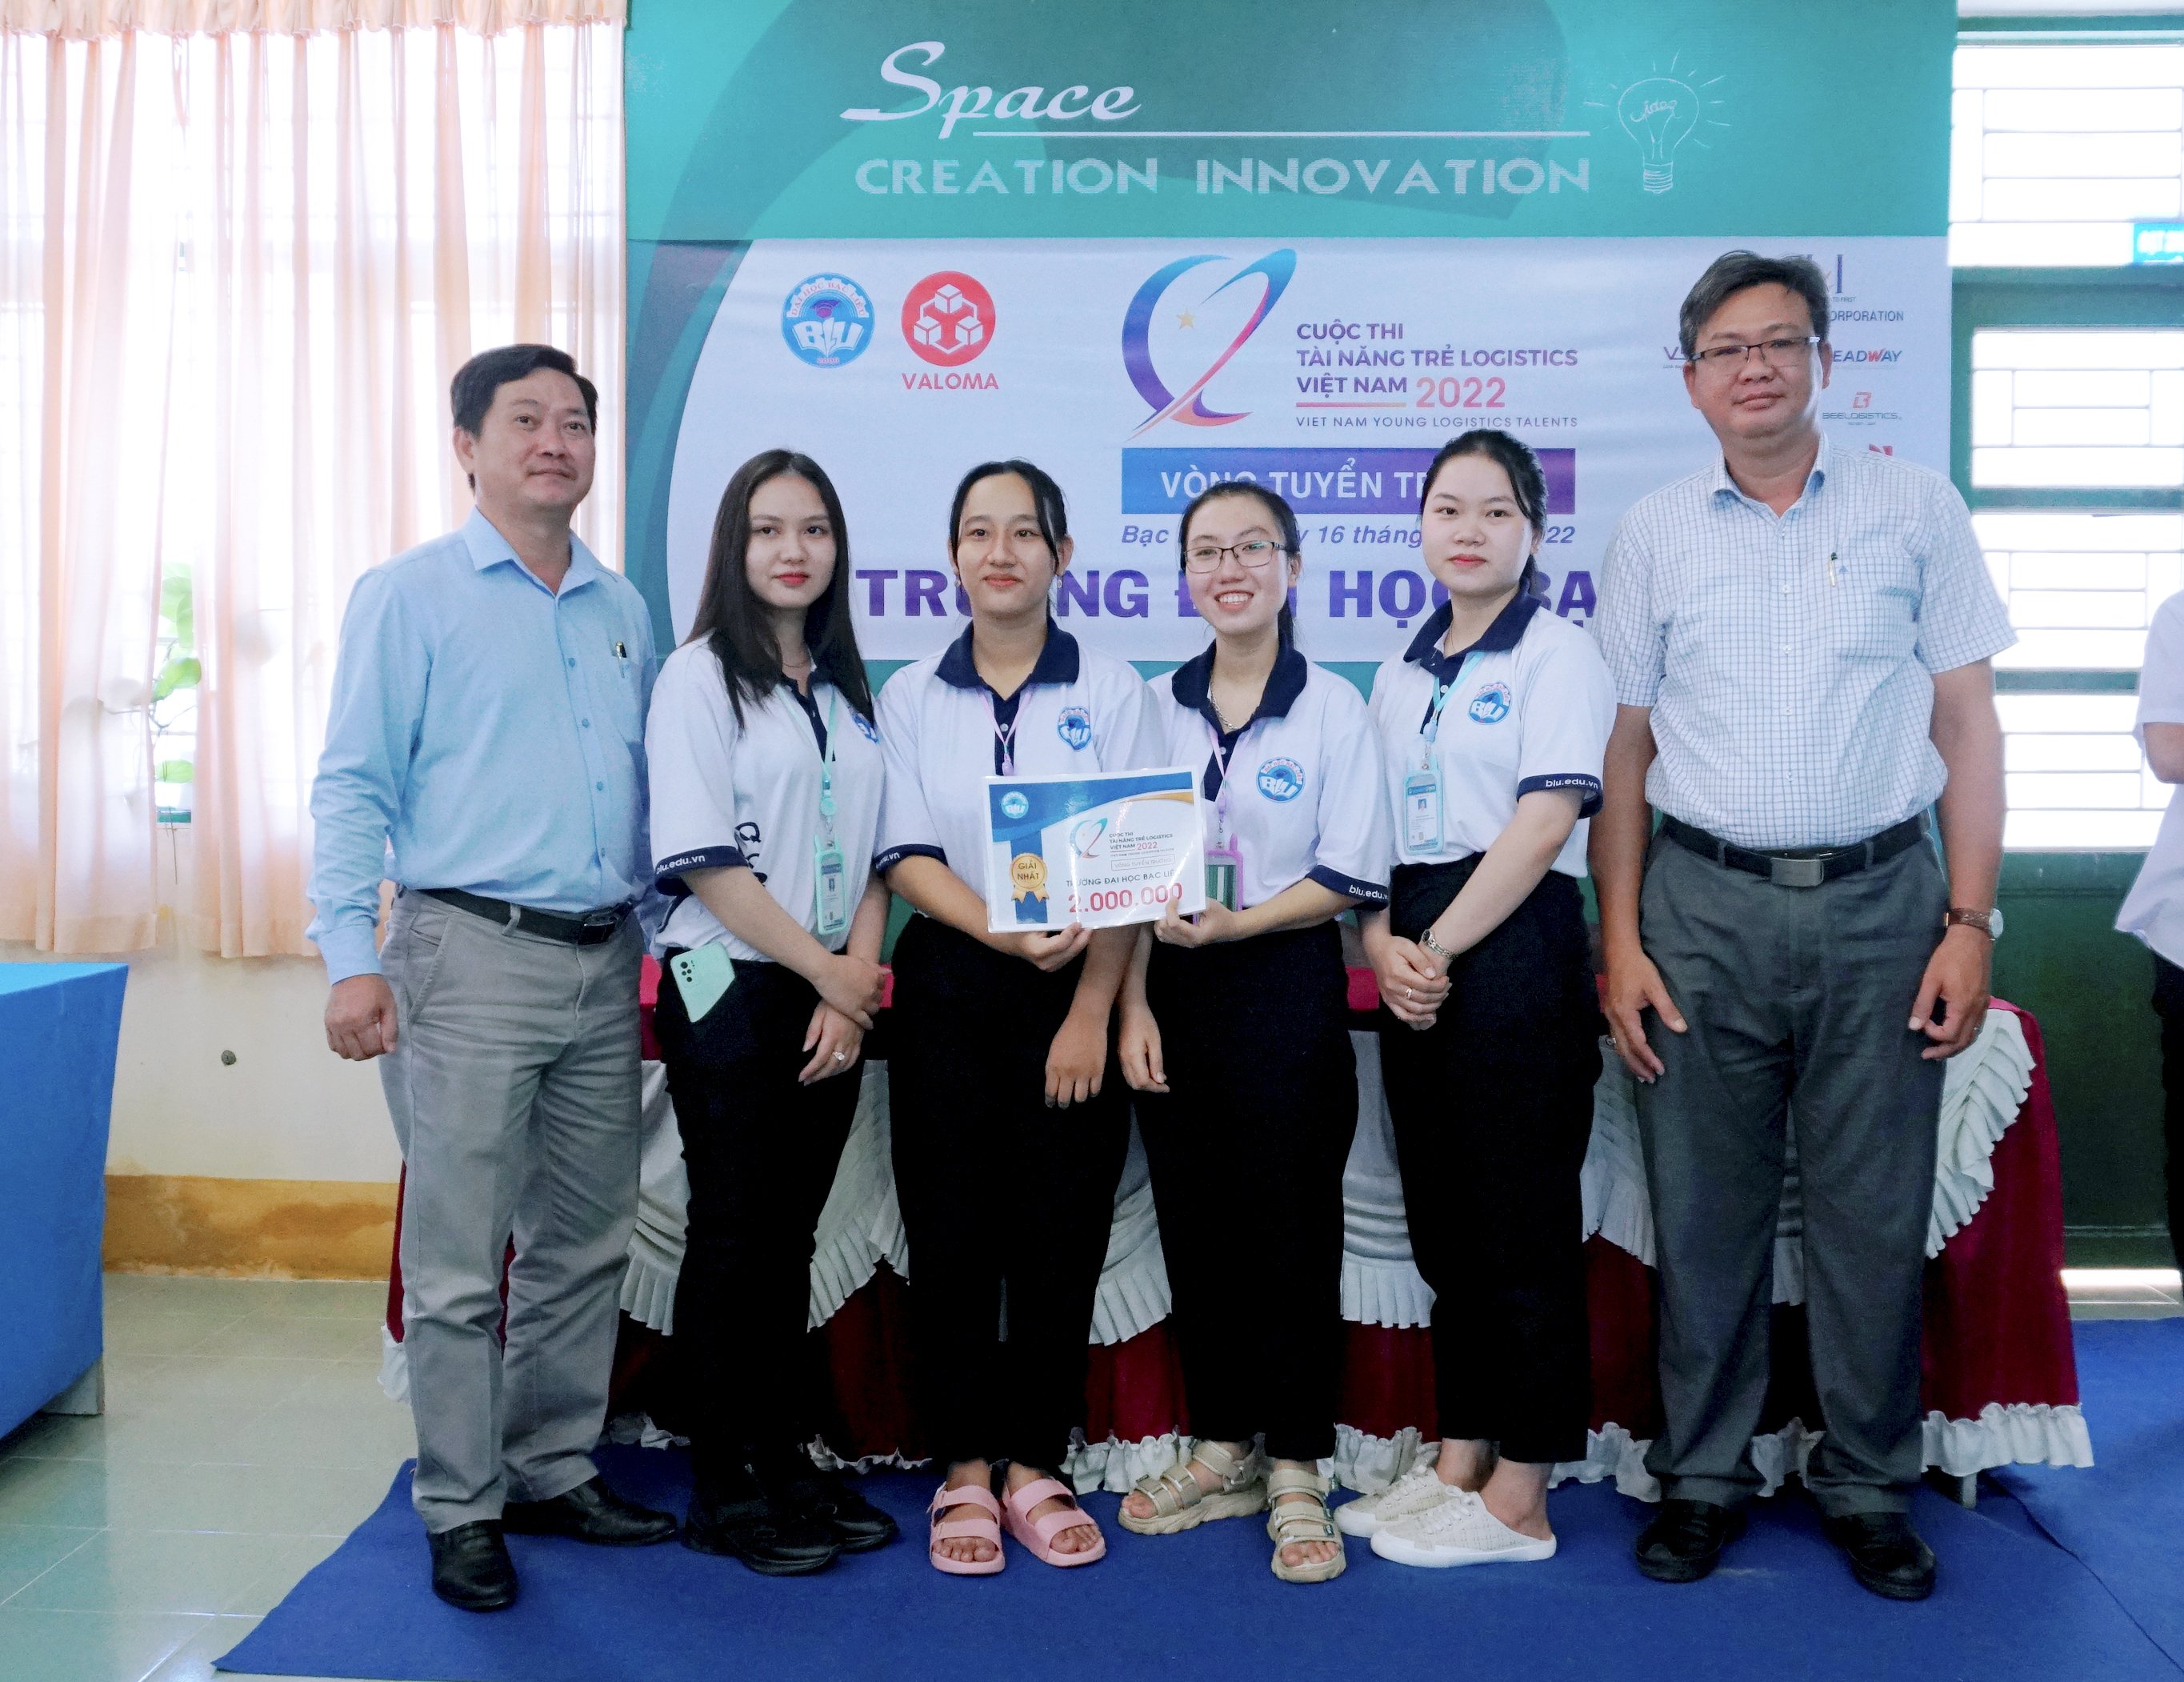 Tổ chức vòng tuyển Trường Cuộc thi tài năng trẻ Logistics Việt Nam 2022 